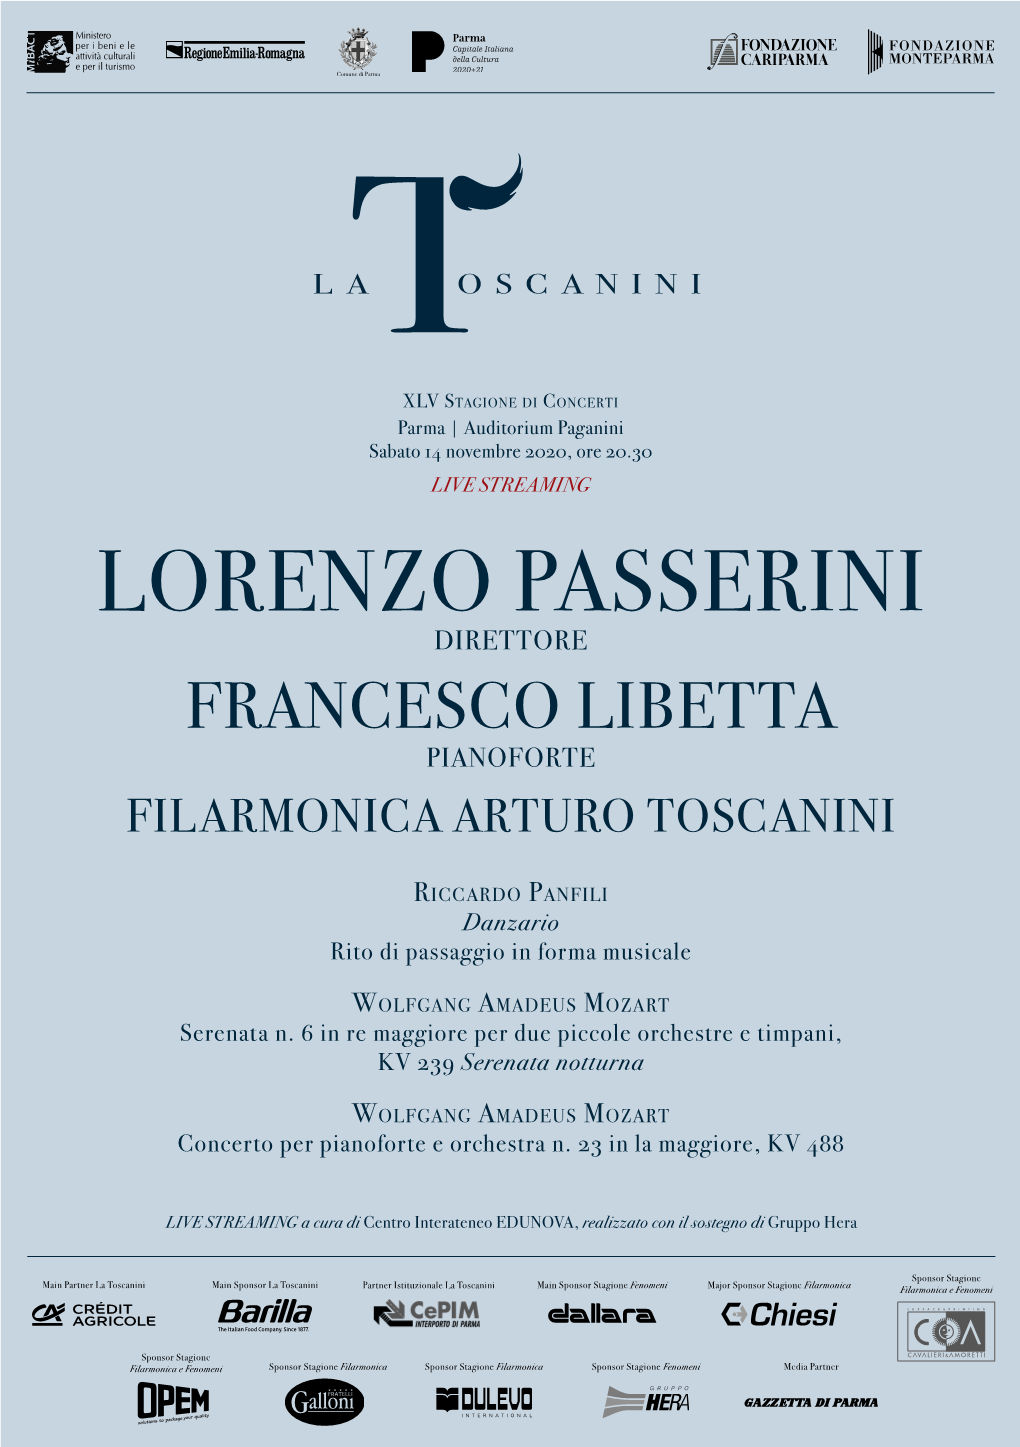 LORENZO PASSERINI Direttore FRANCESCO LIBETTA Pianoforte FILARMONICA ARTURO TOSCANINI